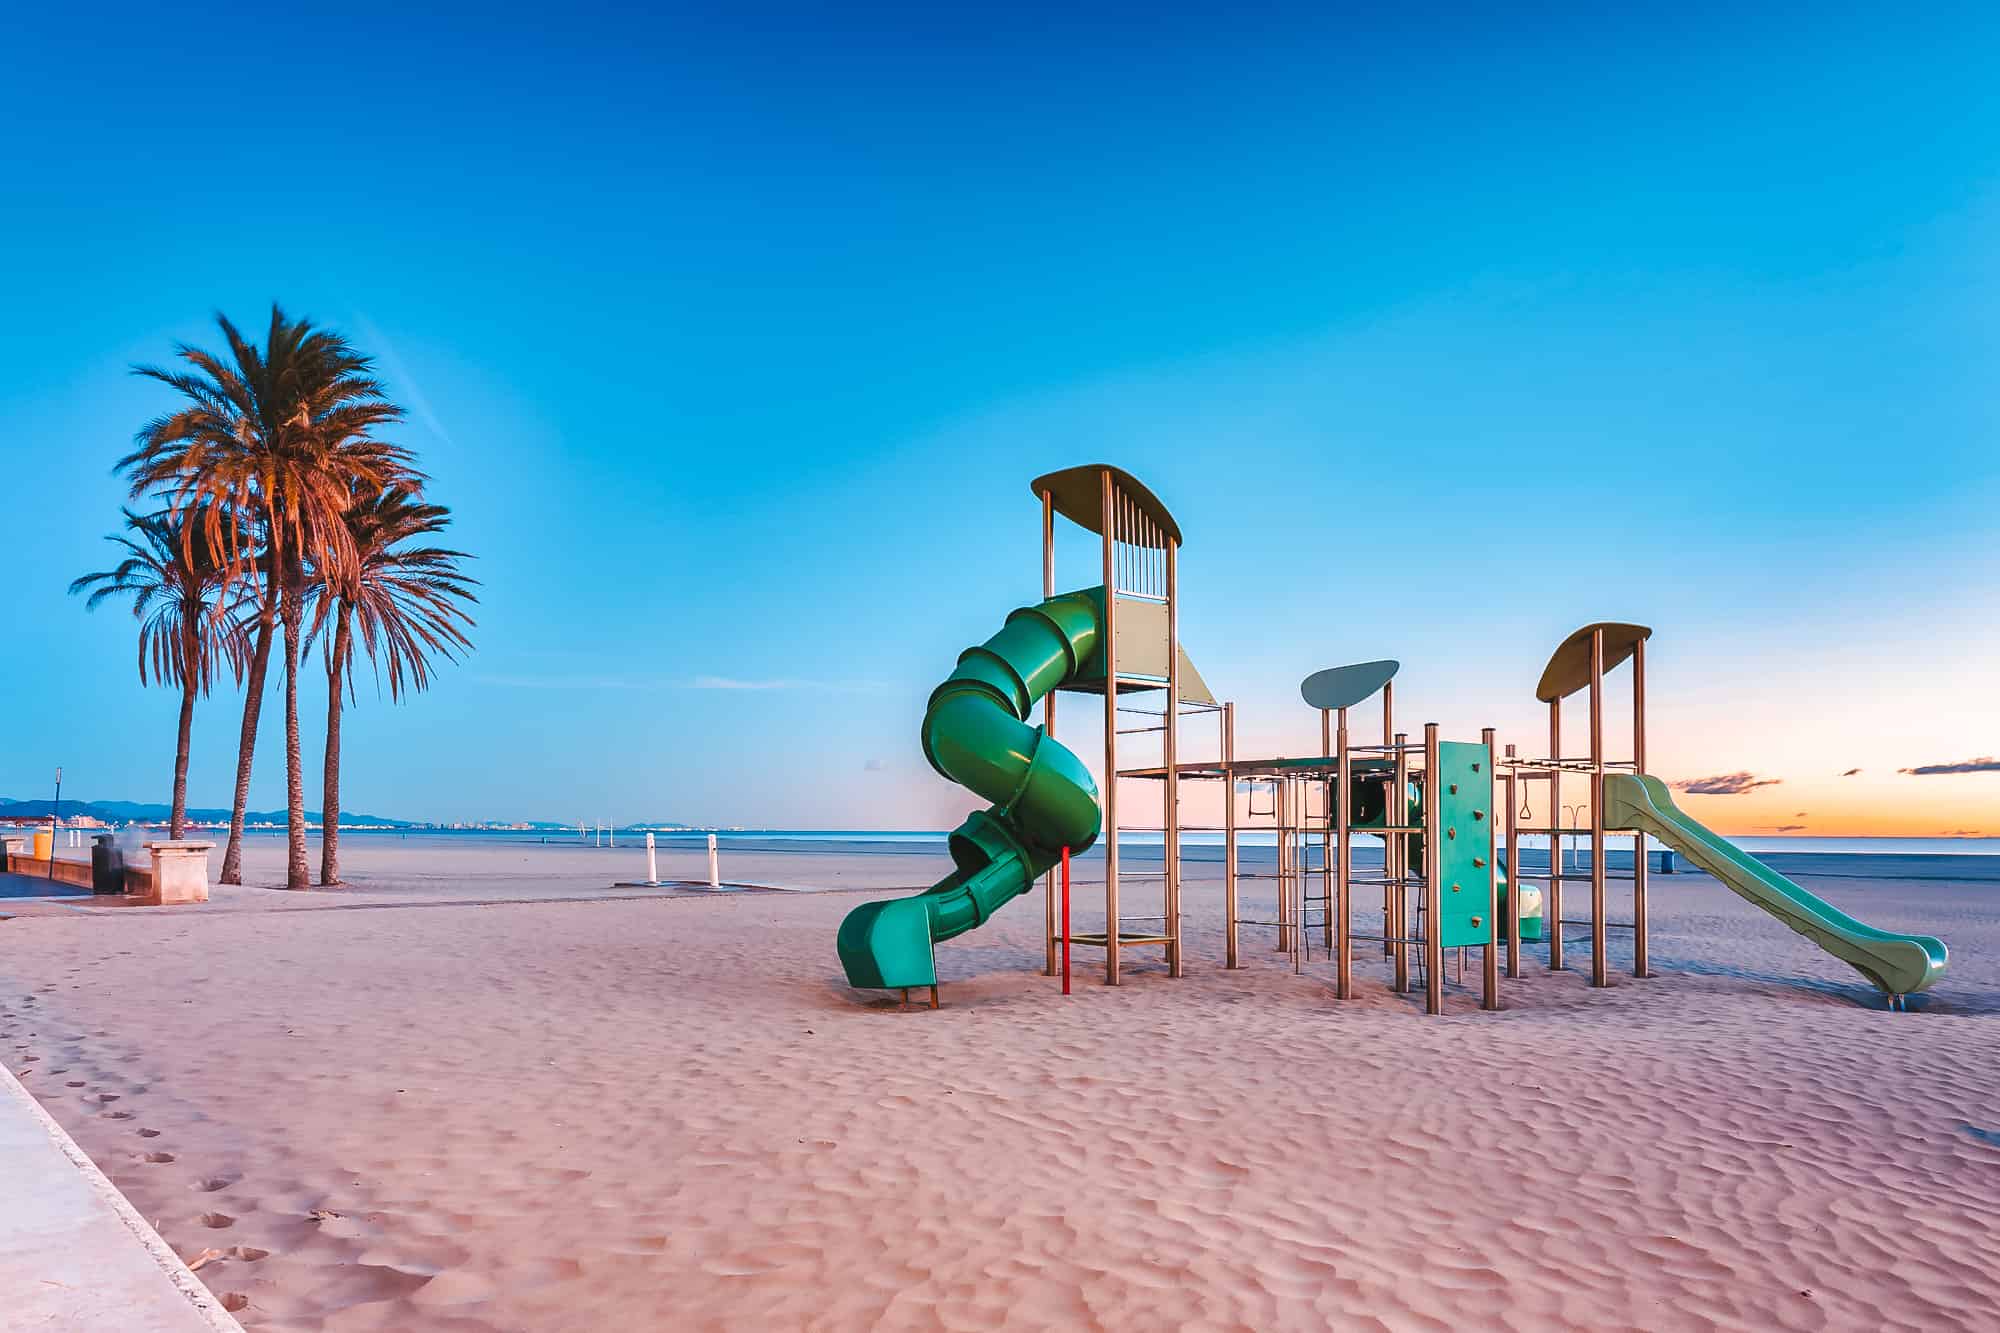 Public playground at Playa de las Arenas beach in Valencia at d